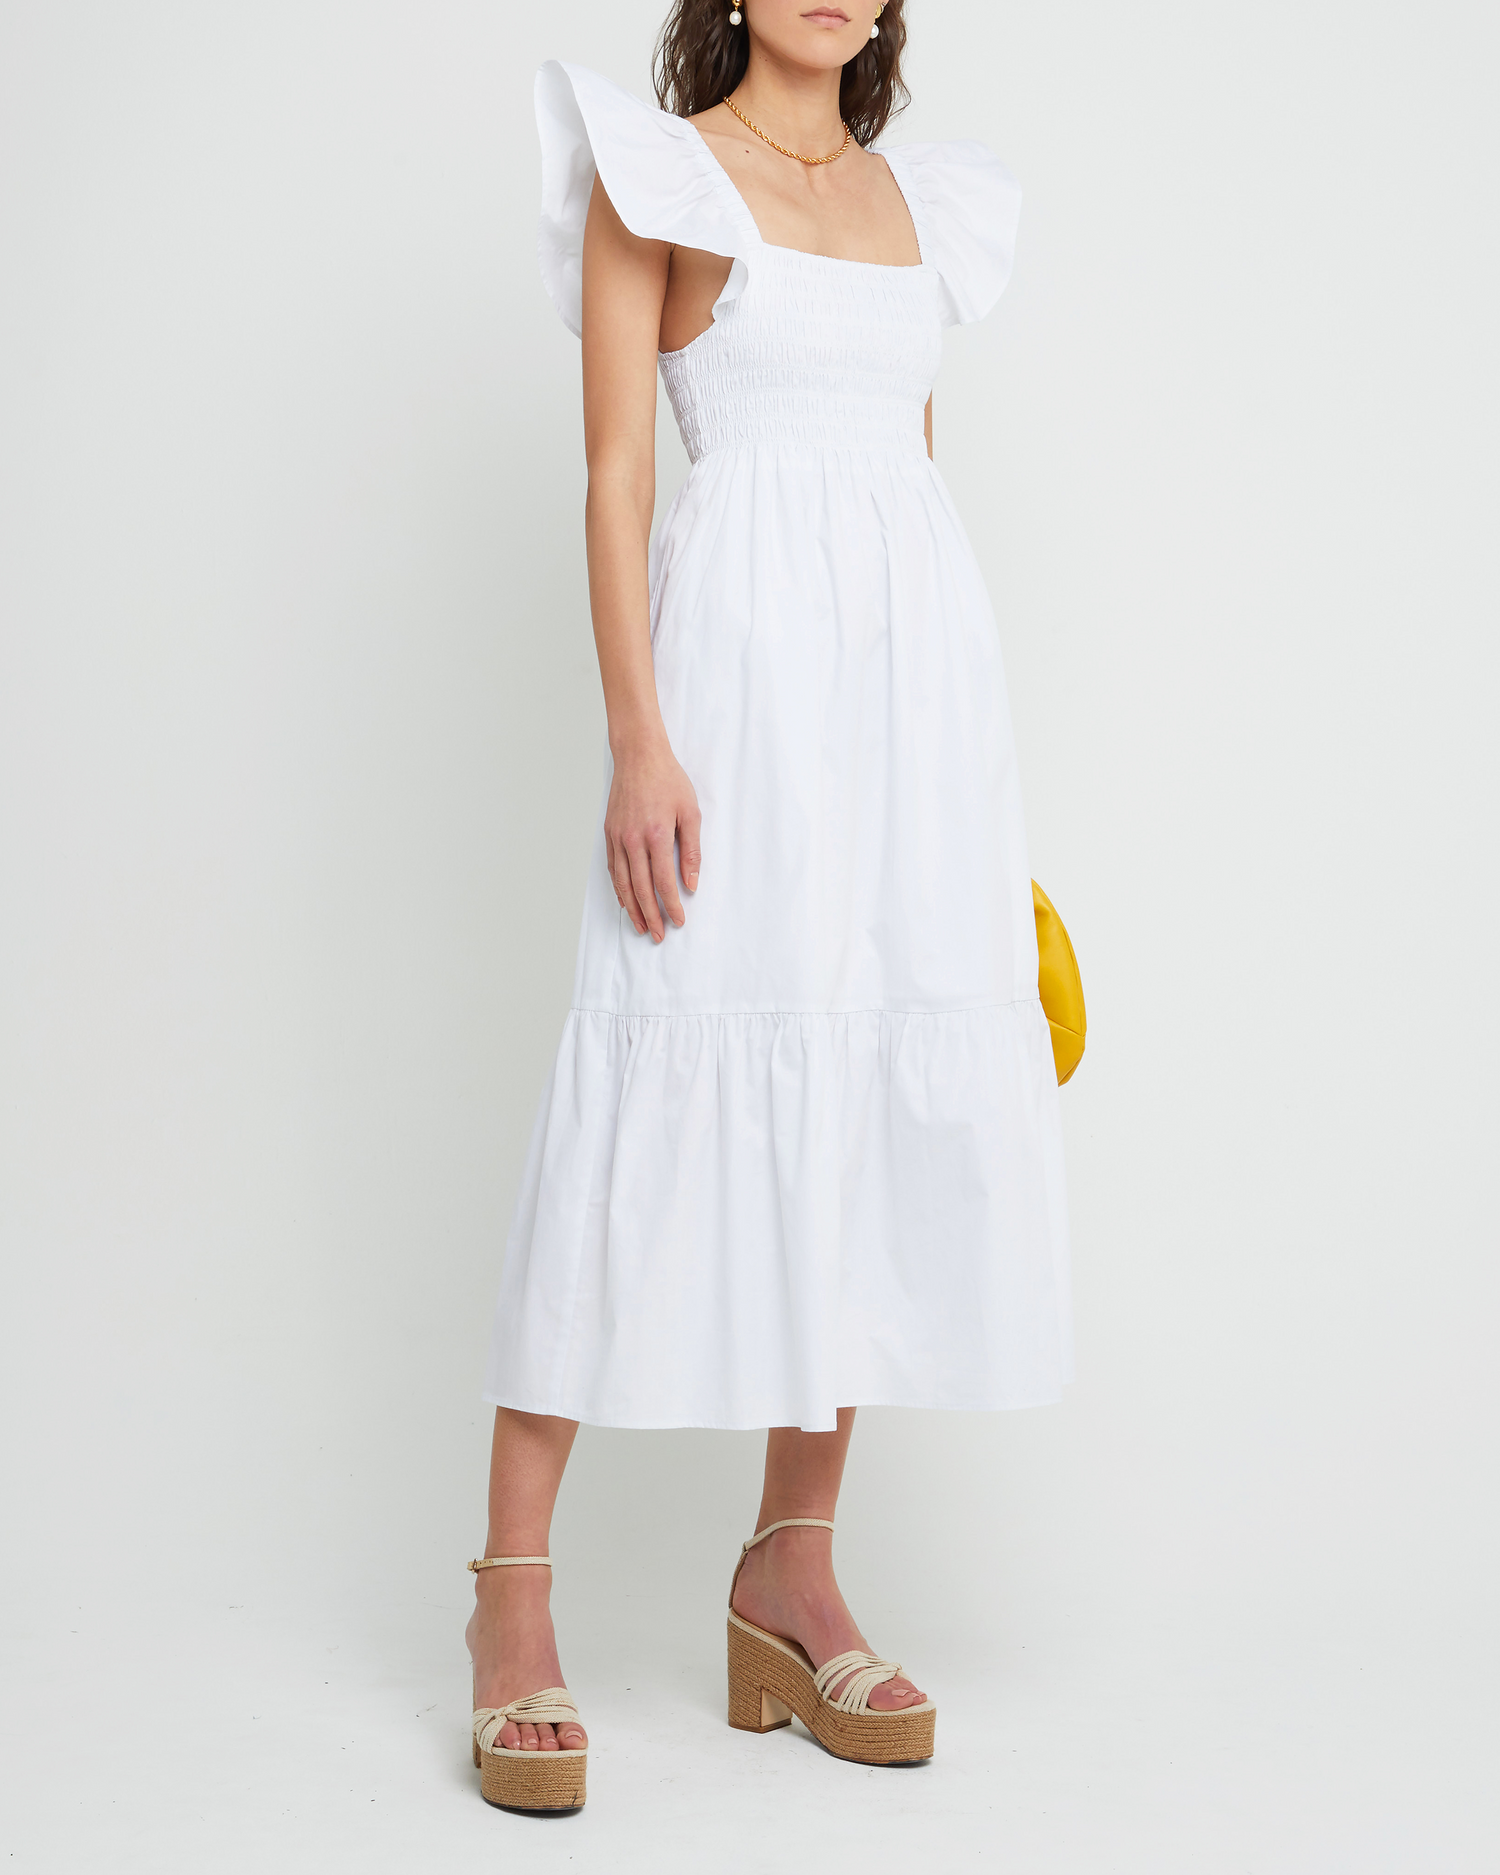 Fifth image of Tuscany Dress, a white maxi dress, smocked bodice, ruffled cap sleeves, pockets